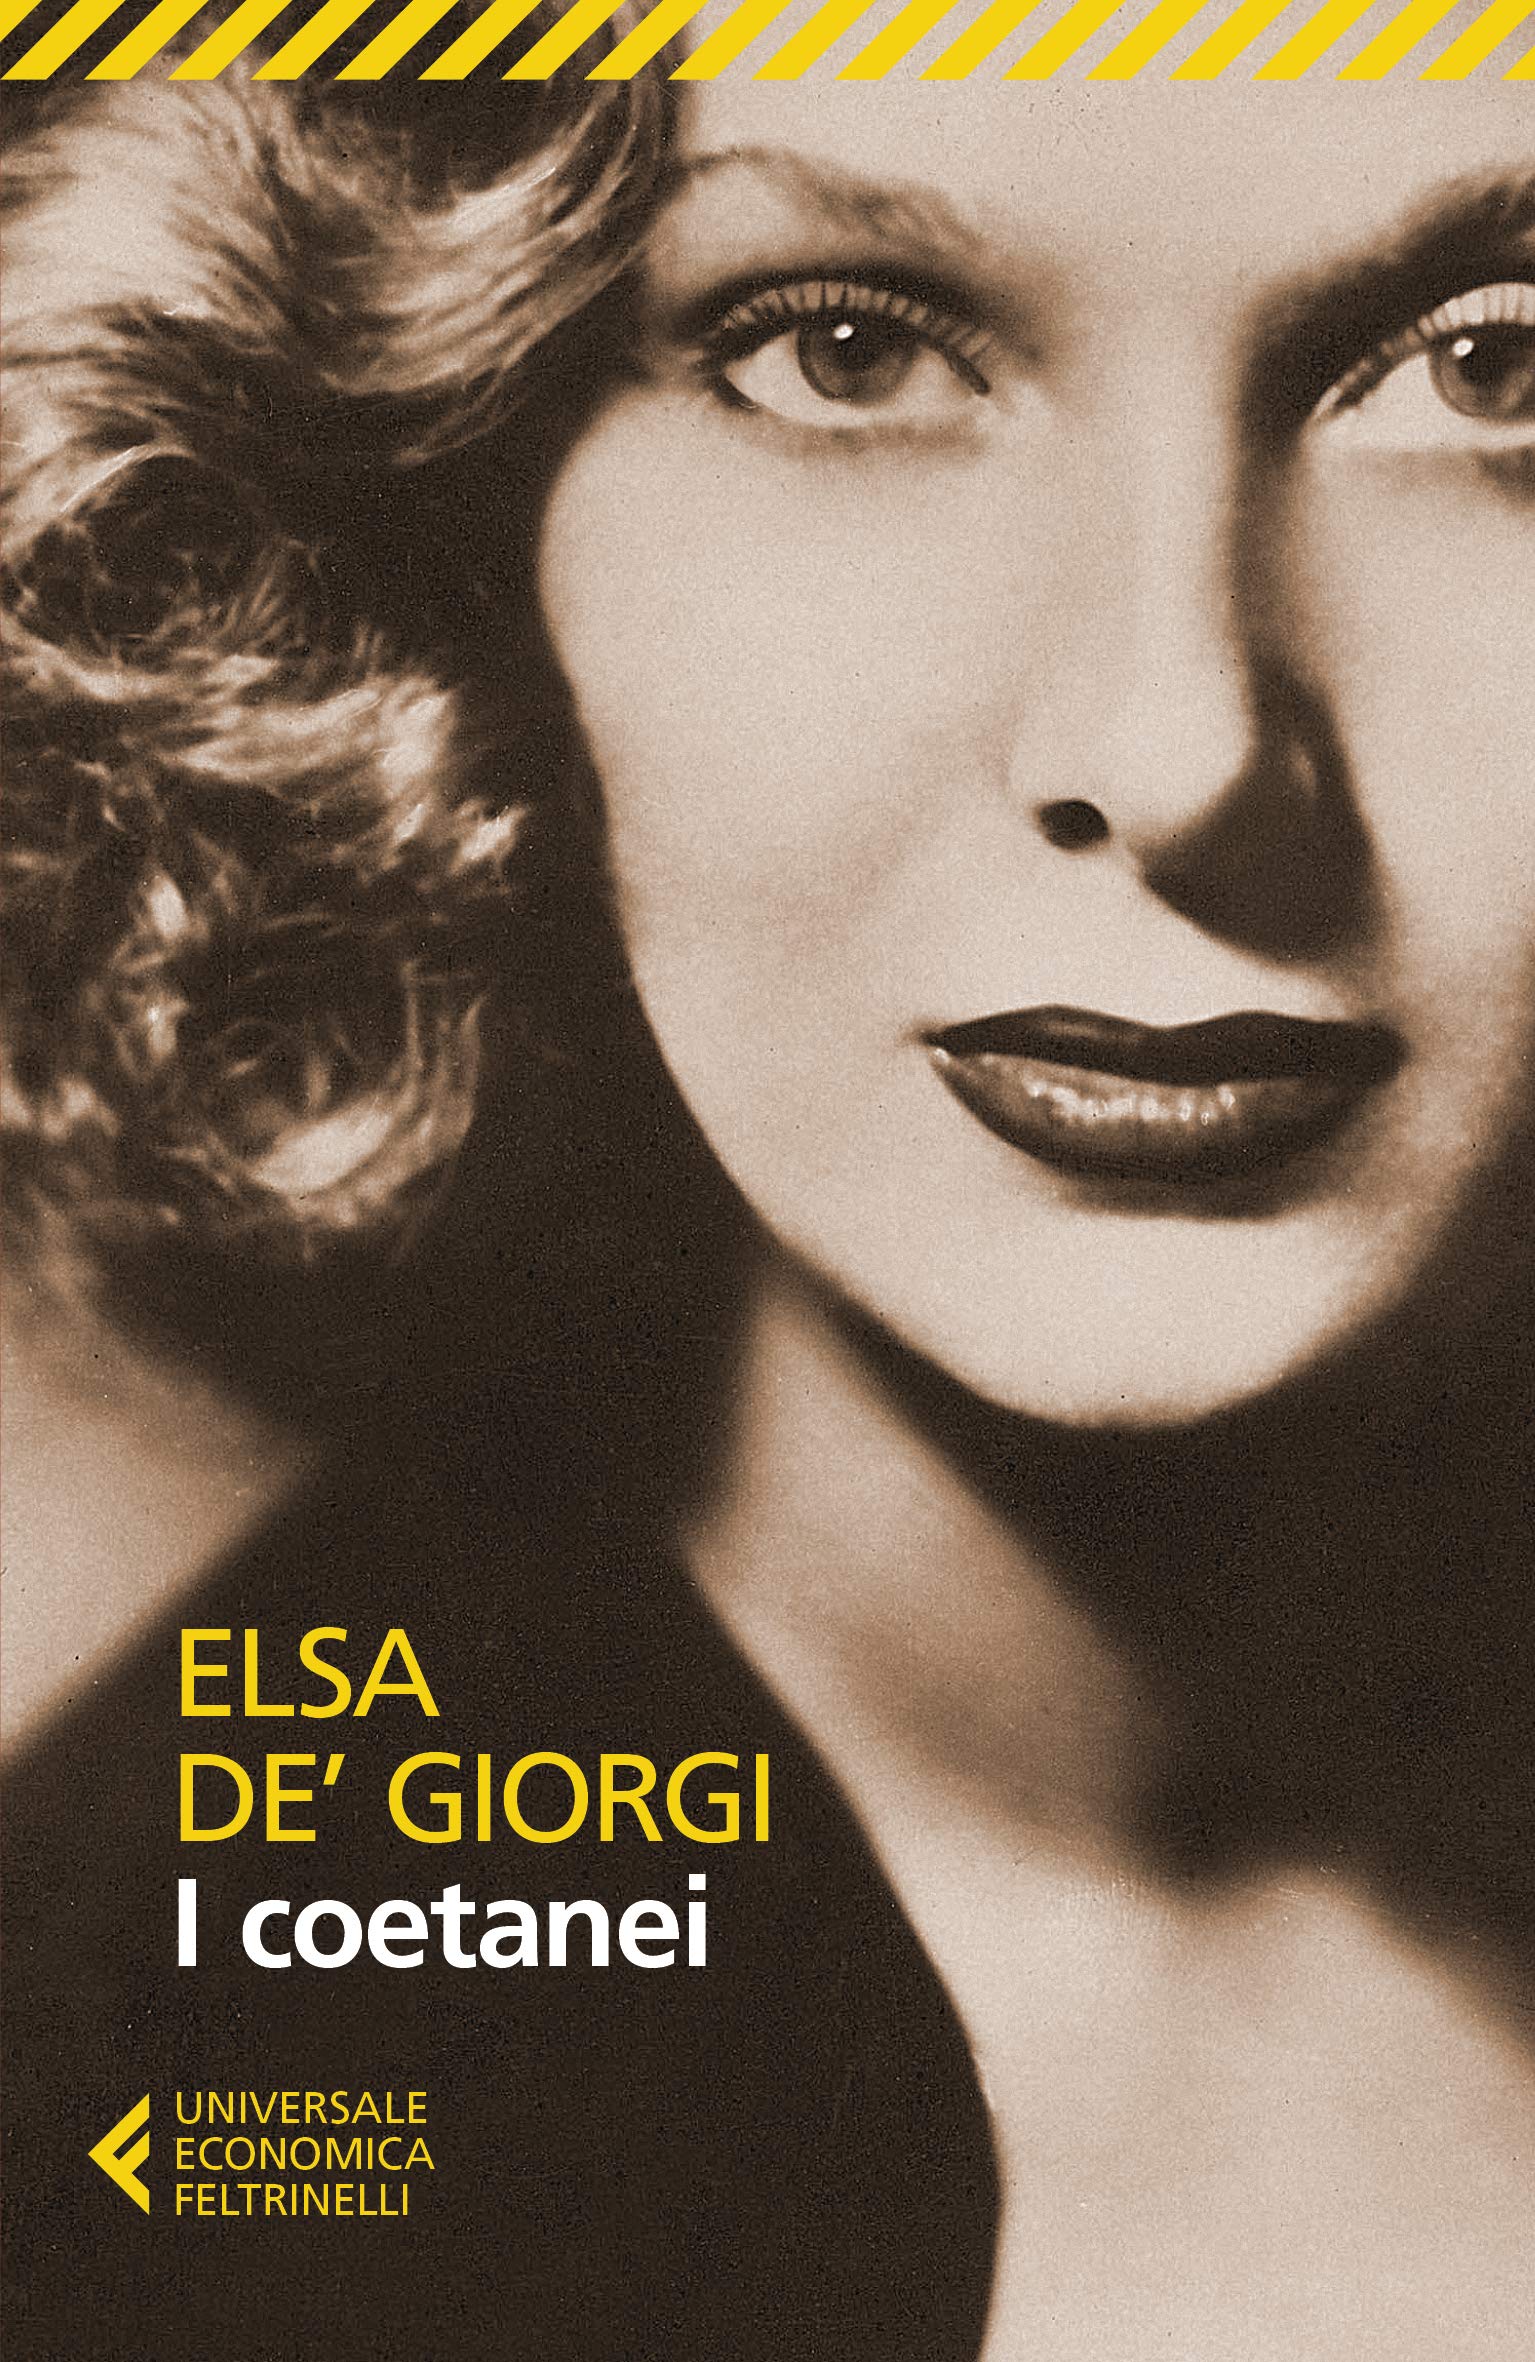 Copertina dell’edizione Feltrinelli del libro di Elsa de’ Giorgi, I coetanei (2019; prima ed. 1955)